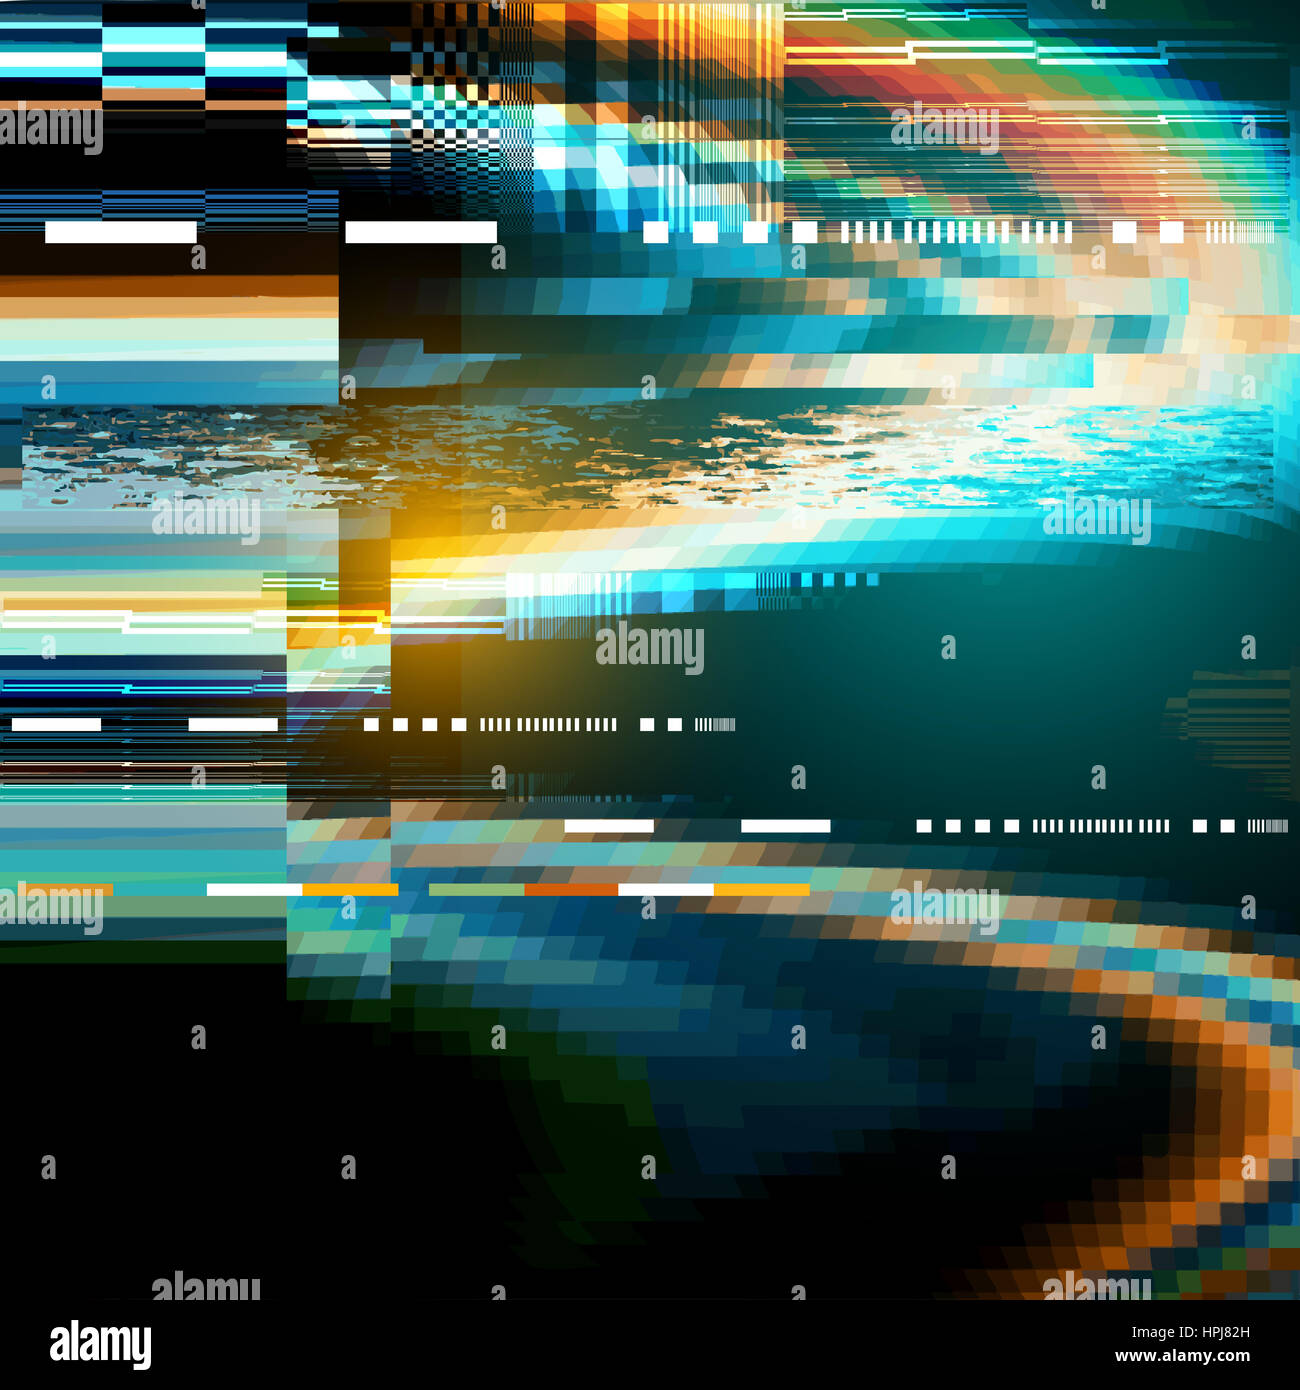 Eine Panne Lärm Verzerrung Textur Hintergrund. Vektor-illustration Stockfoto